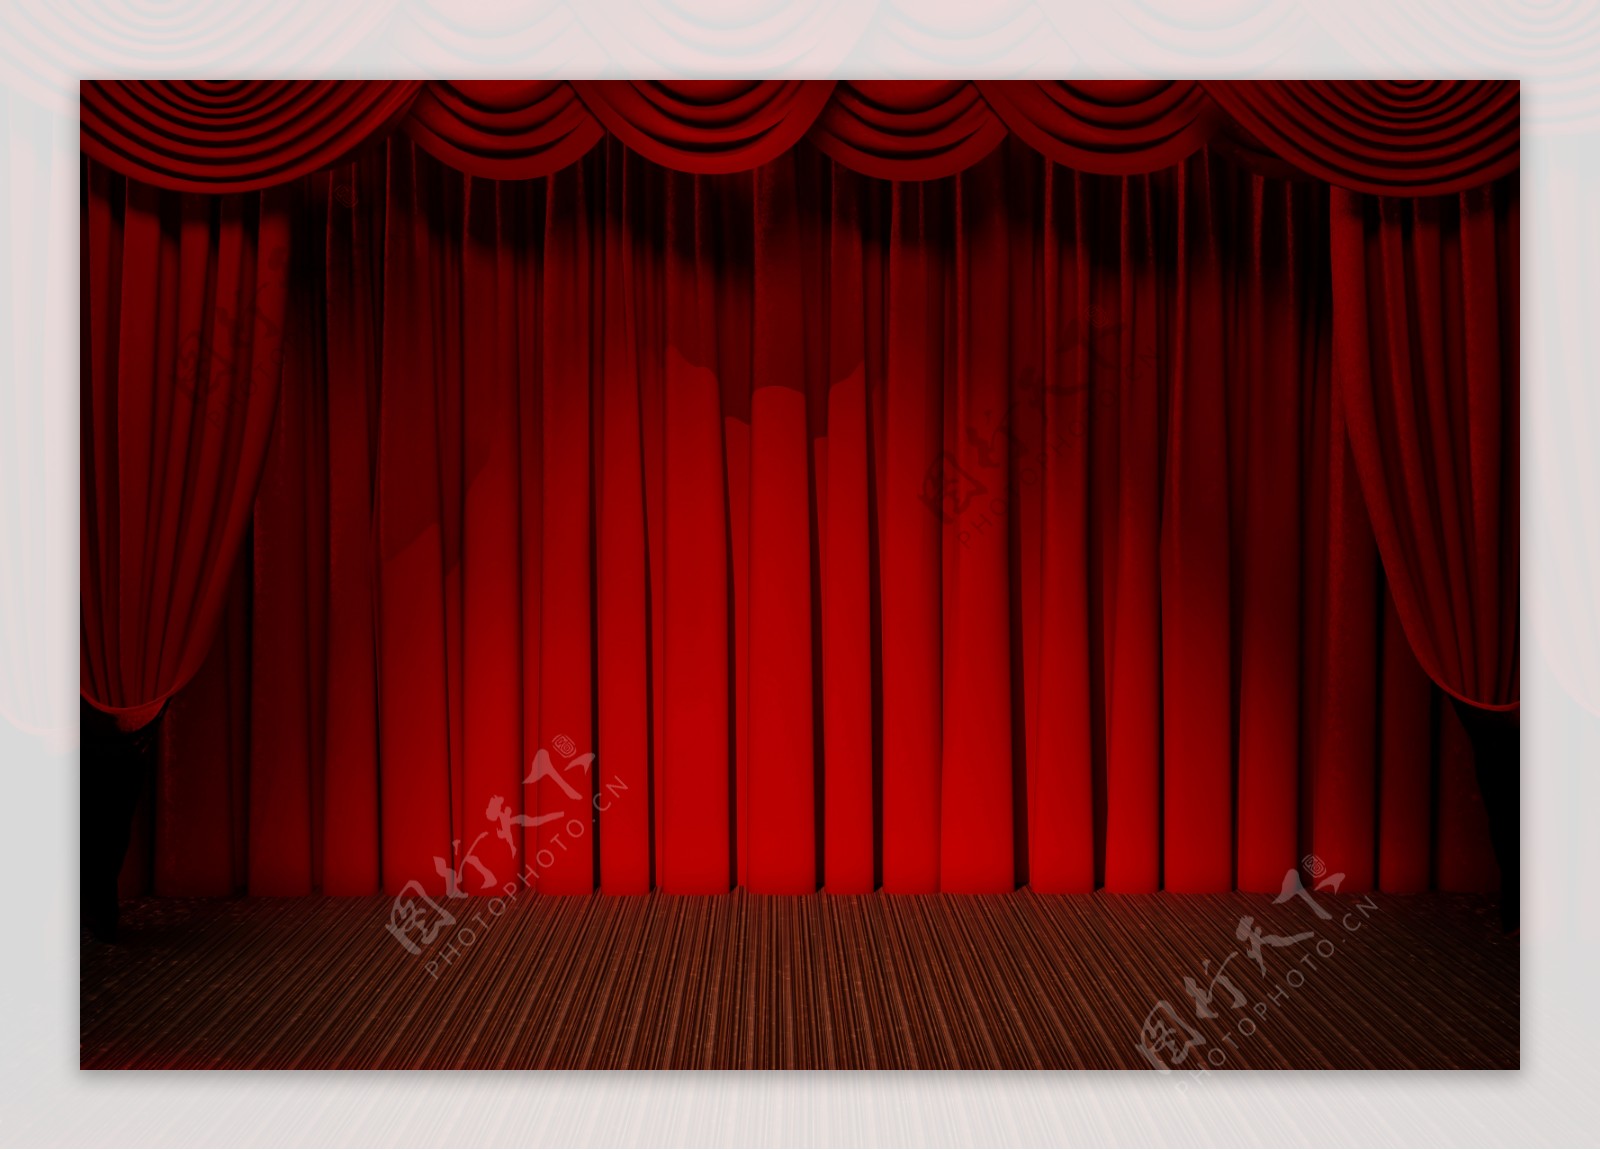 红色舞台背景高清图片